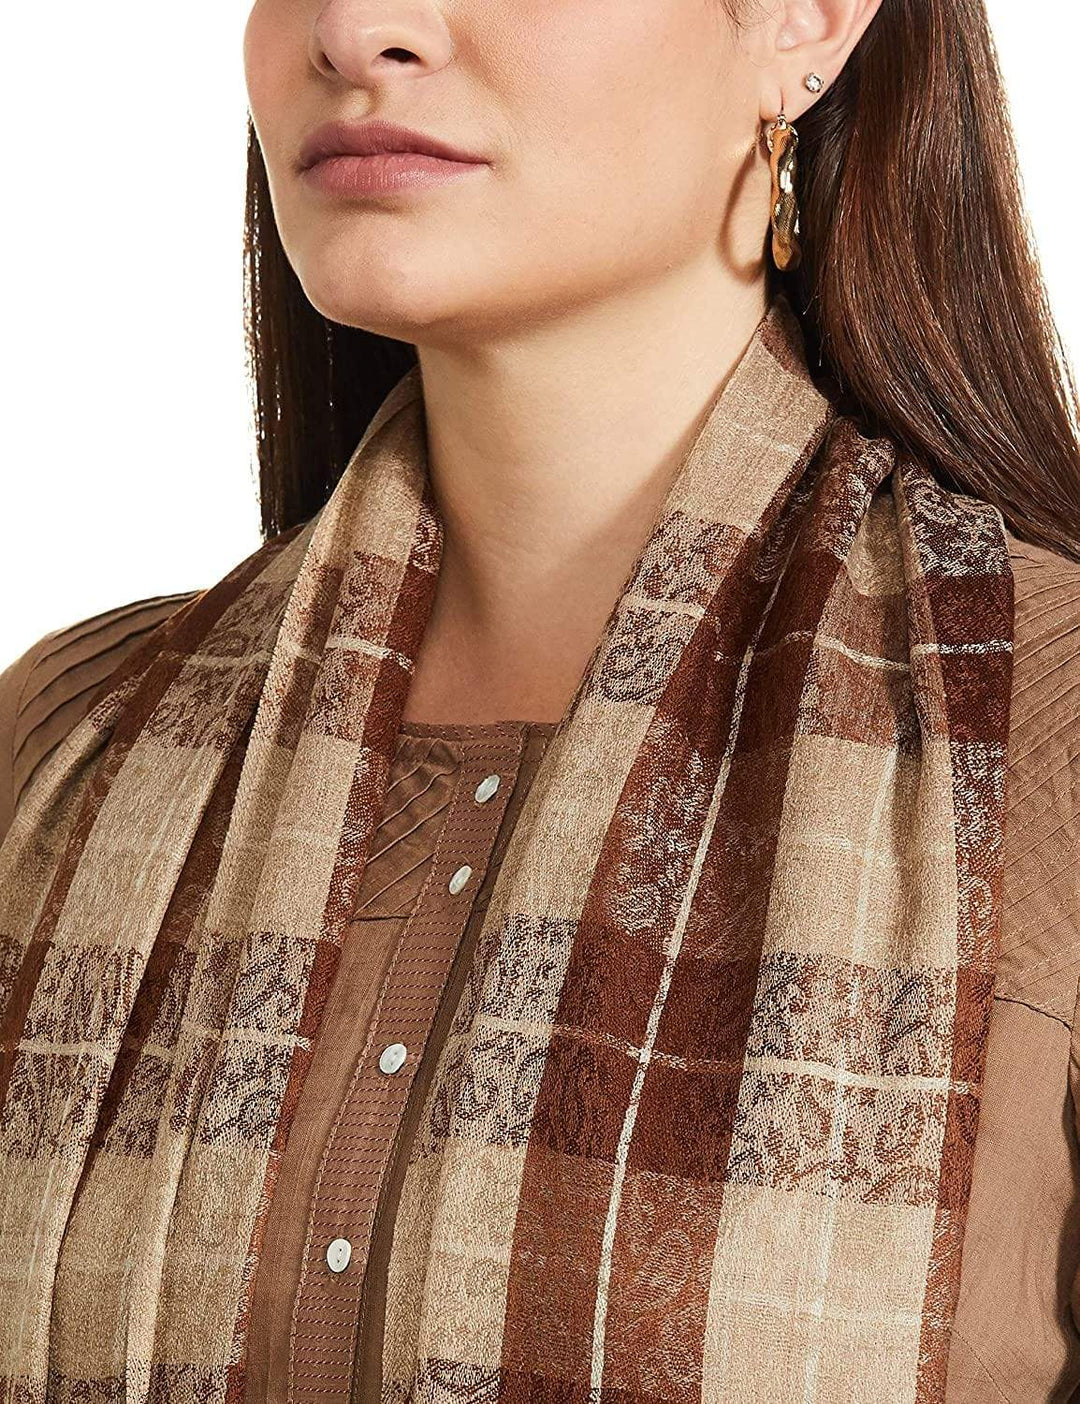 Pashtush India 114x228 Pashtush Womens Extra Fine Wool Shawl, Soft and Warm, Choco Checks, ( Large Wrap Size )